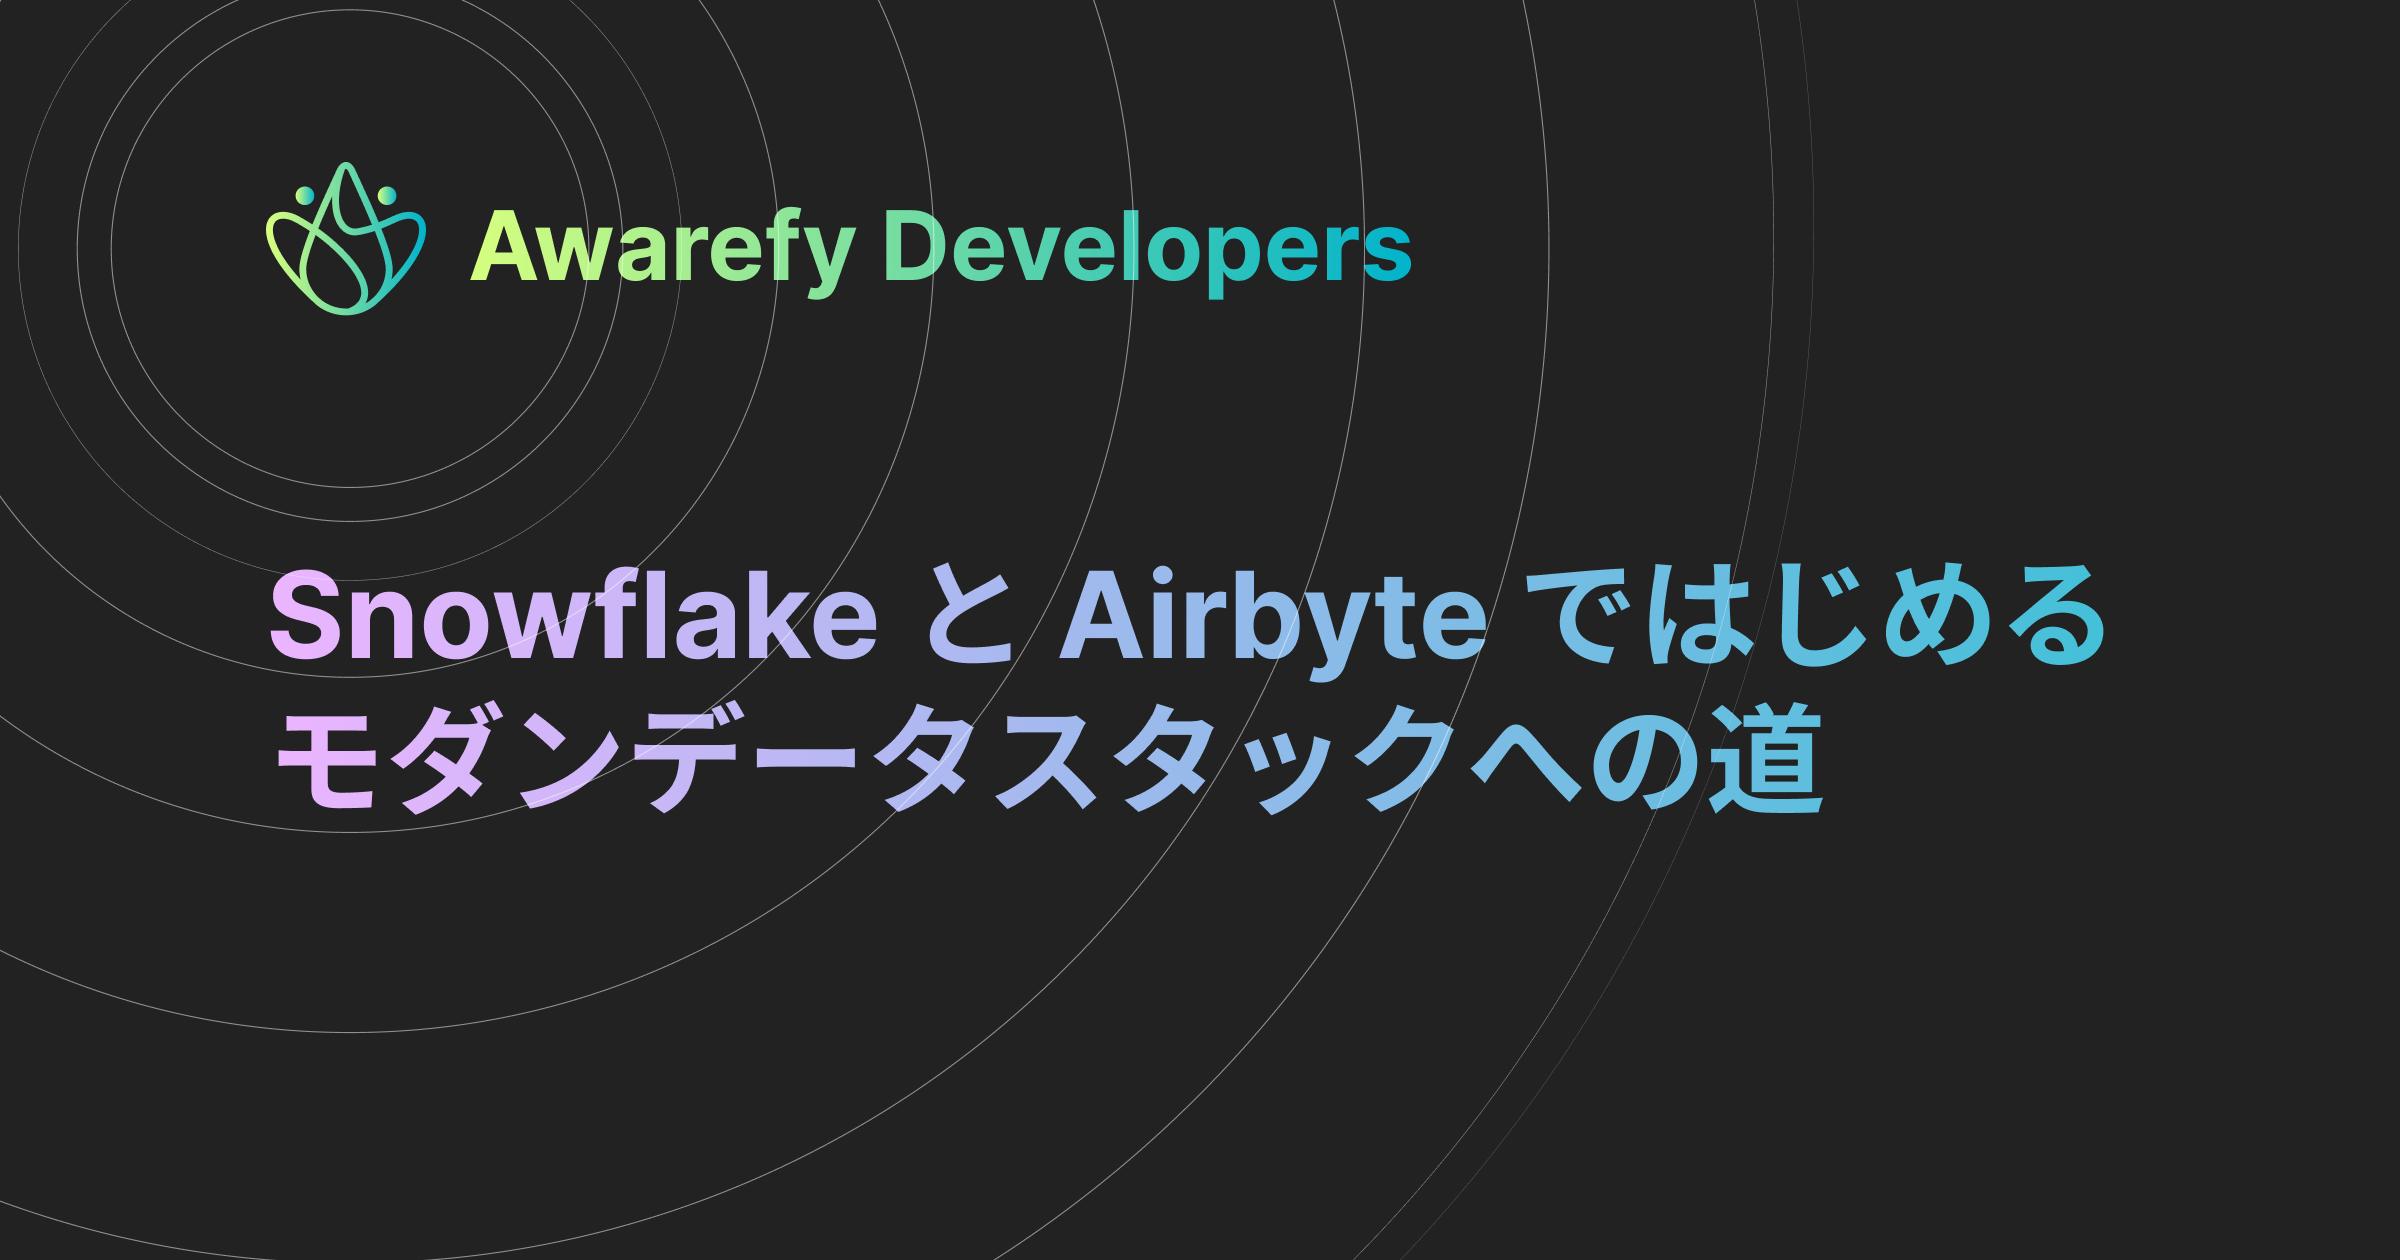 Snowflake と Airbyte ではじめるモダンデータスタックへの道